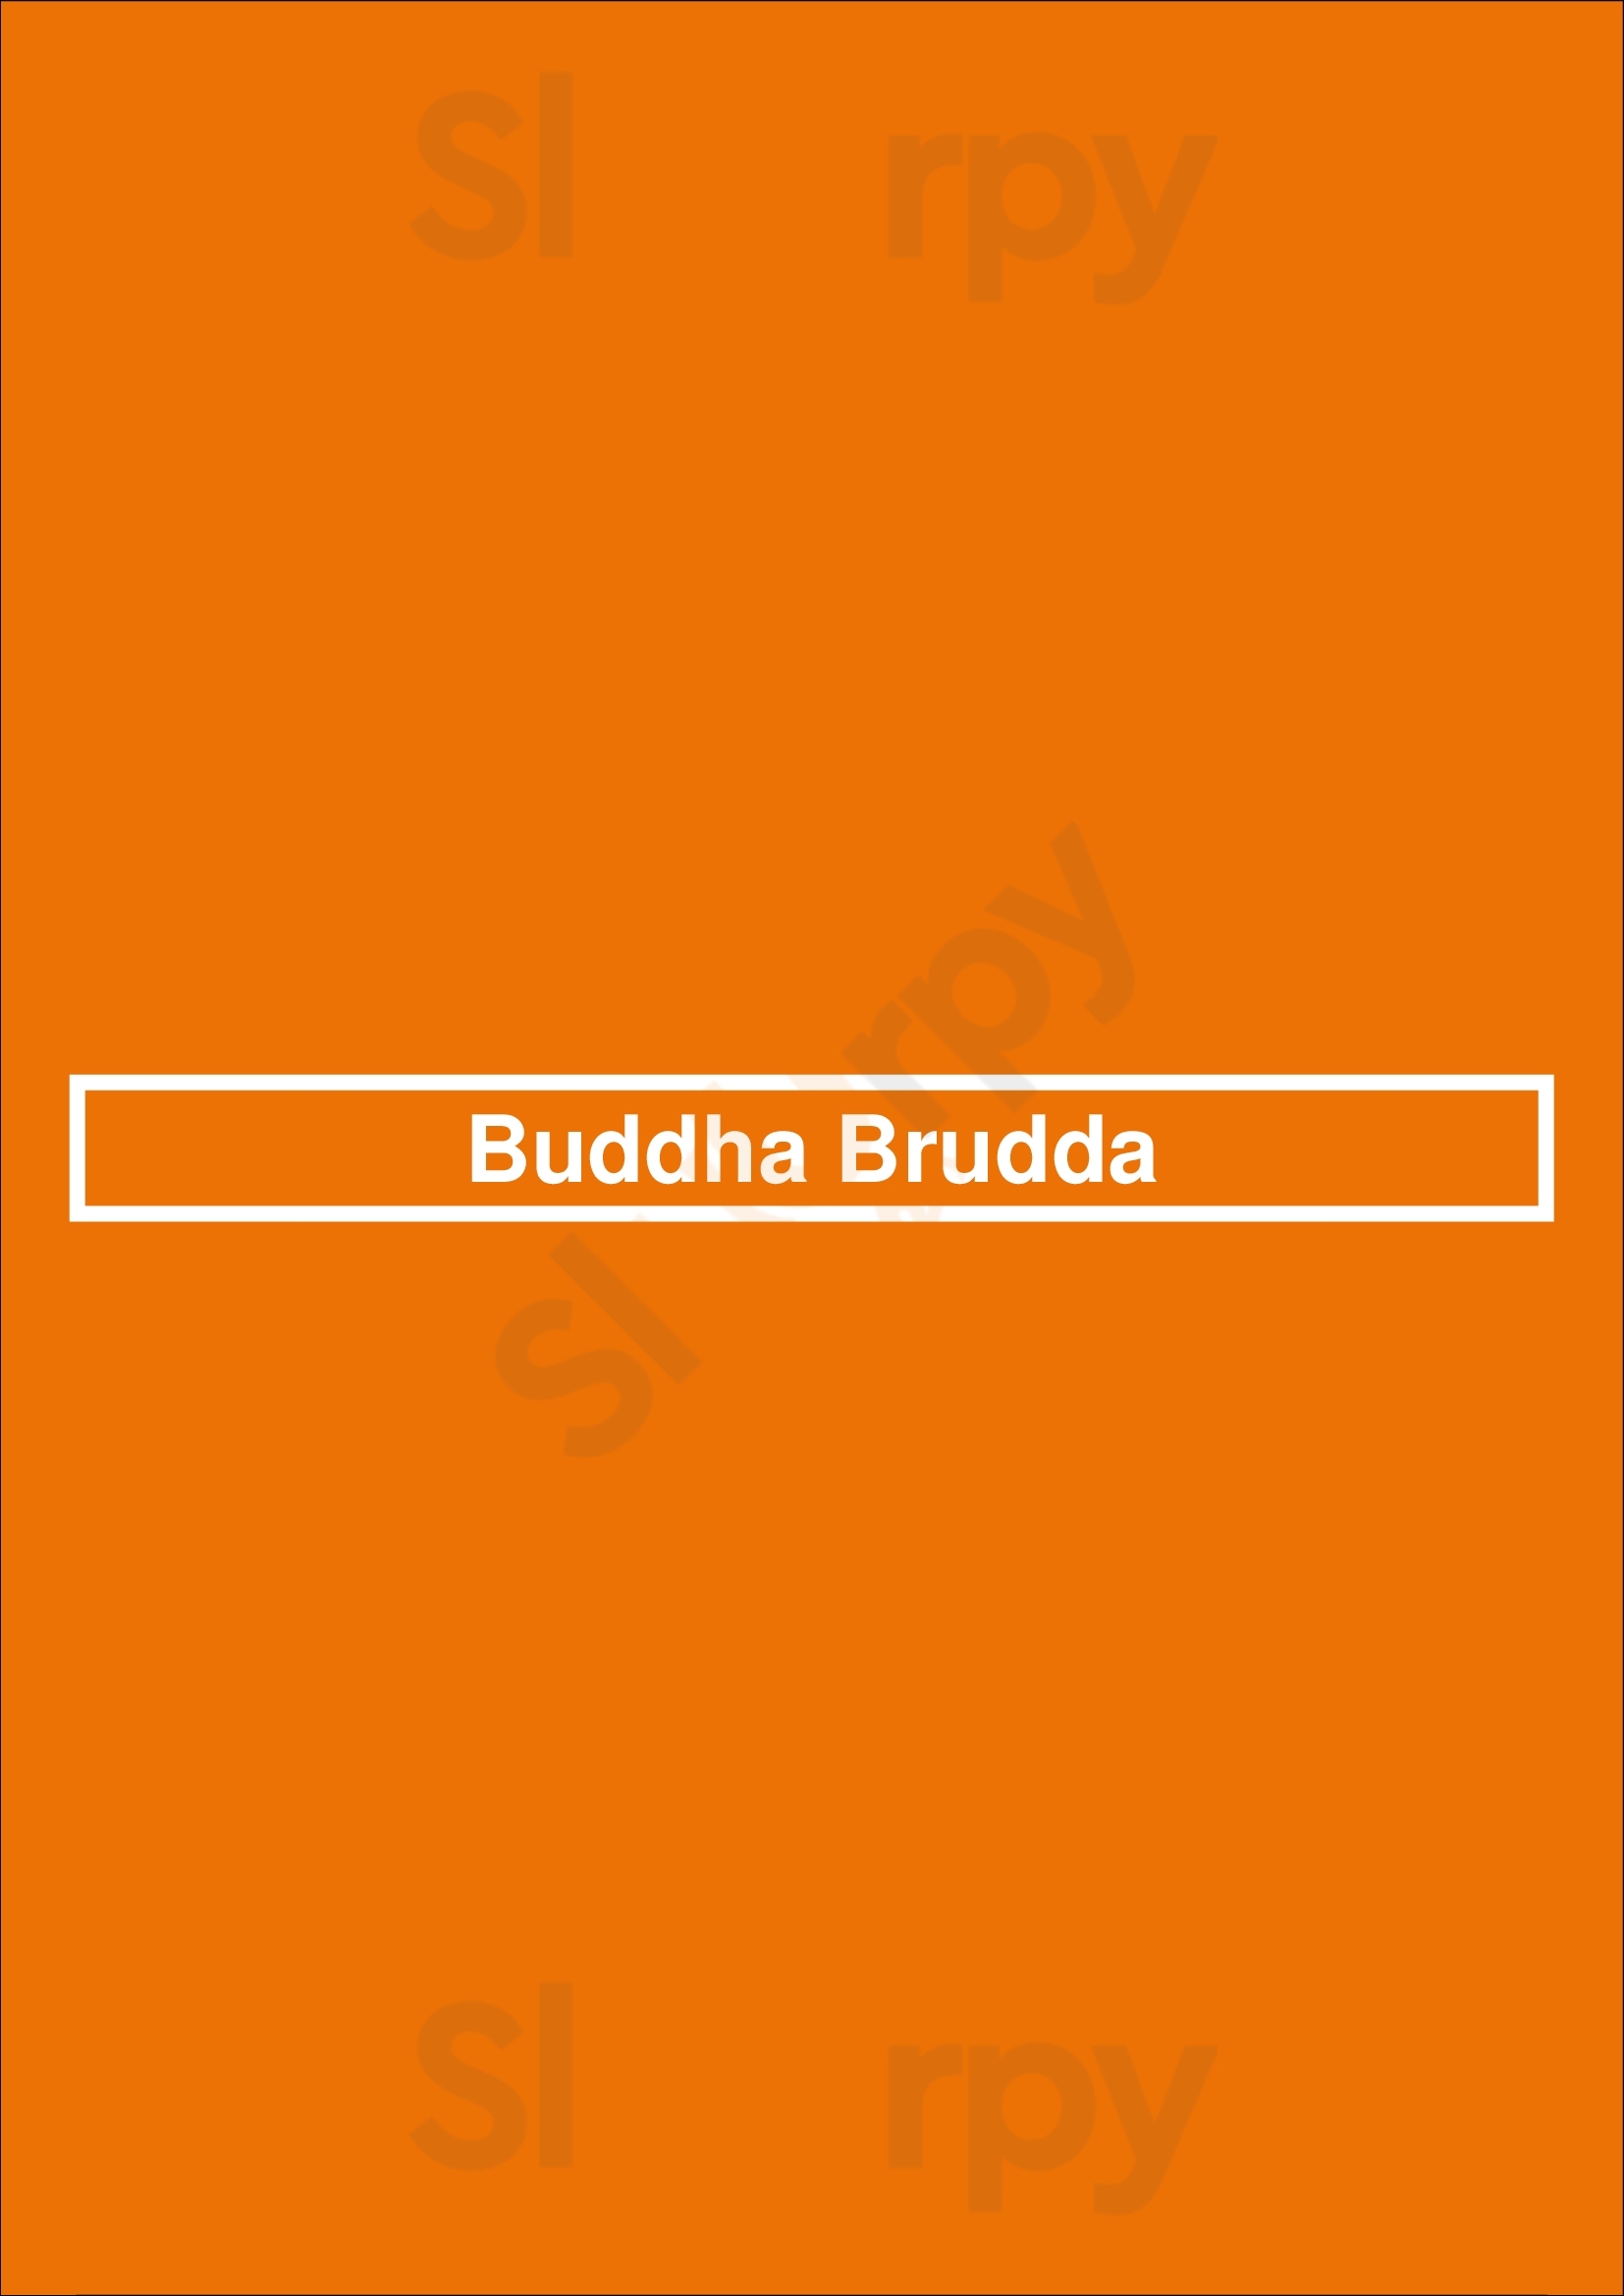 Buddha Brudda Seattle Menu - 1